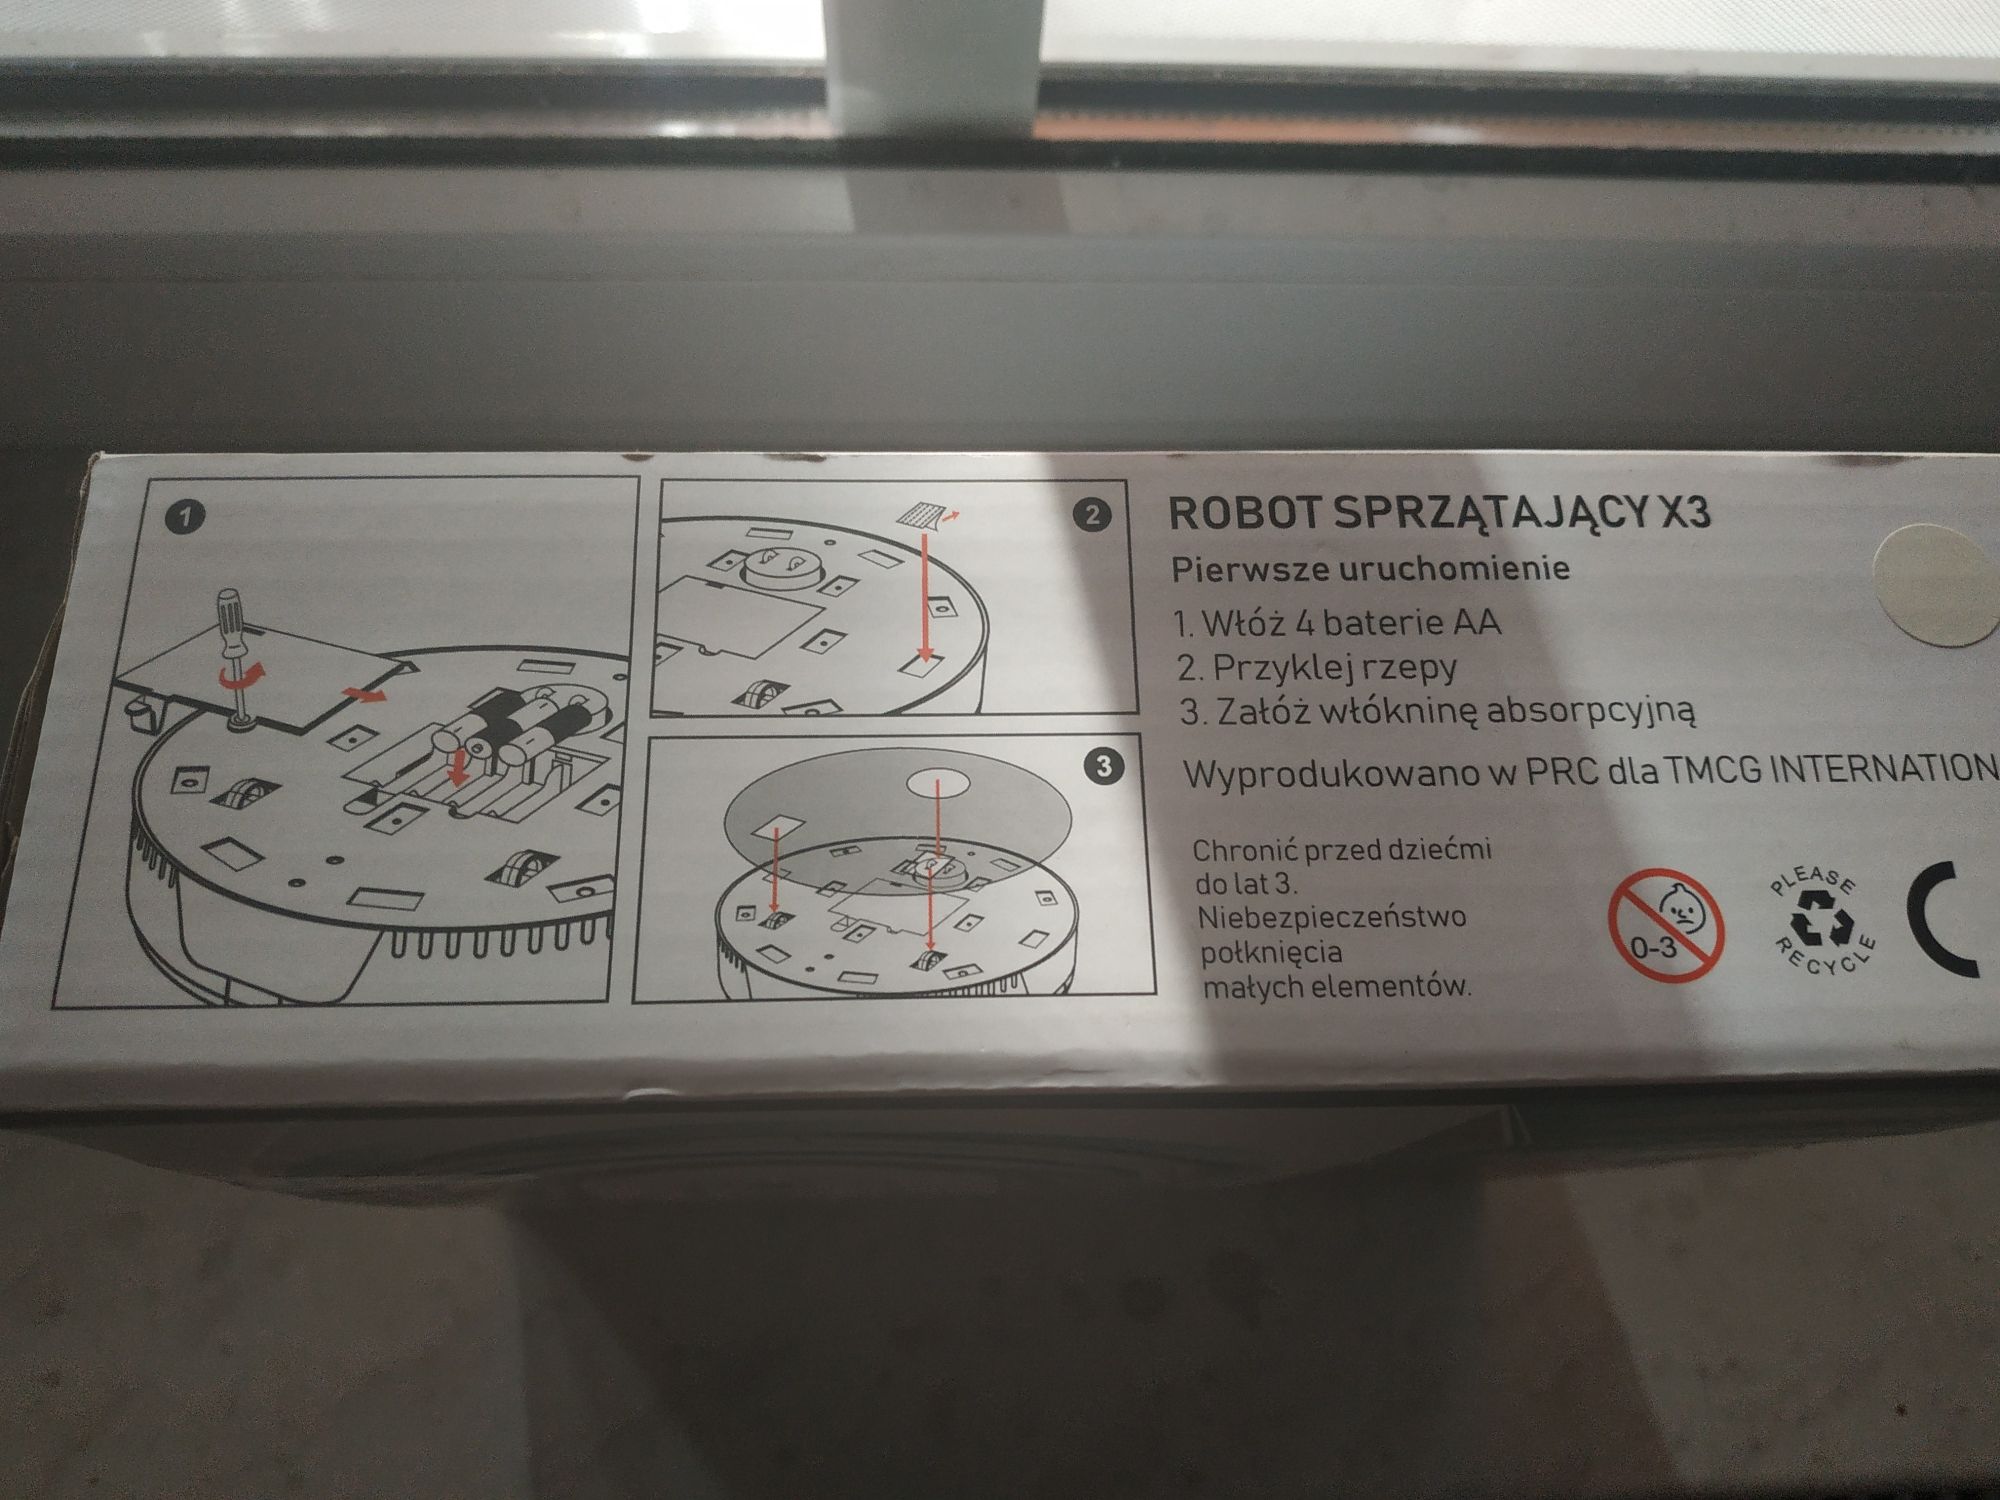 Robomop sprzątający vileda ViRobi RV-1056 + clean smart robot